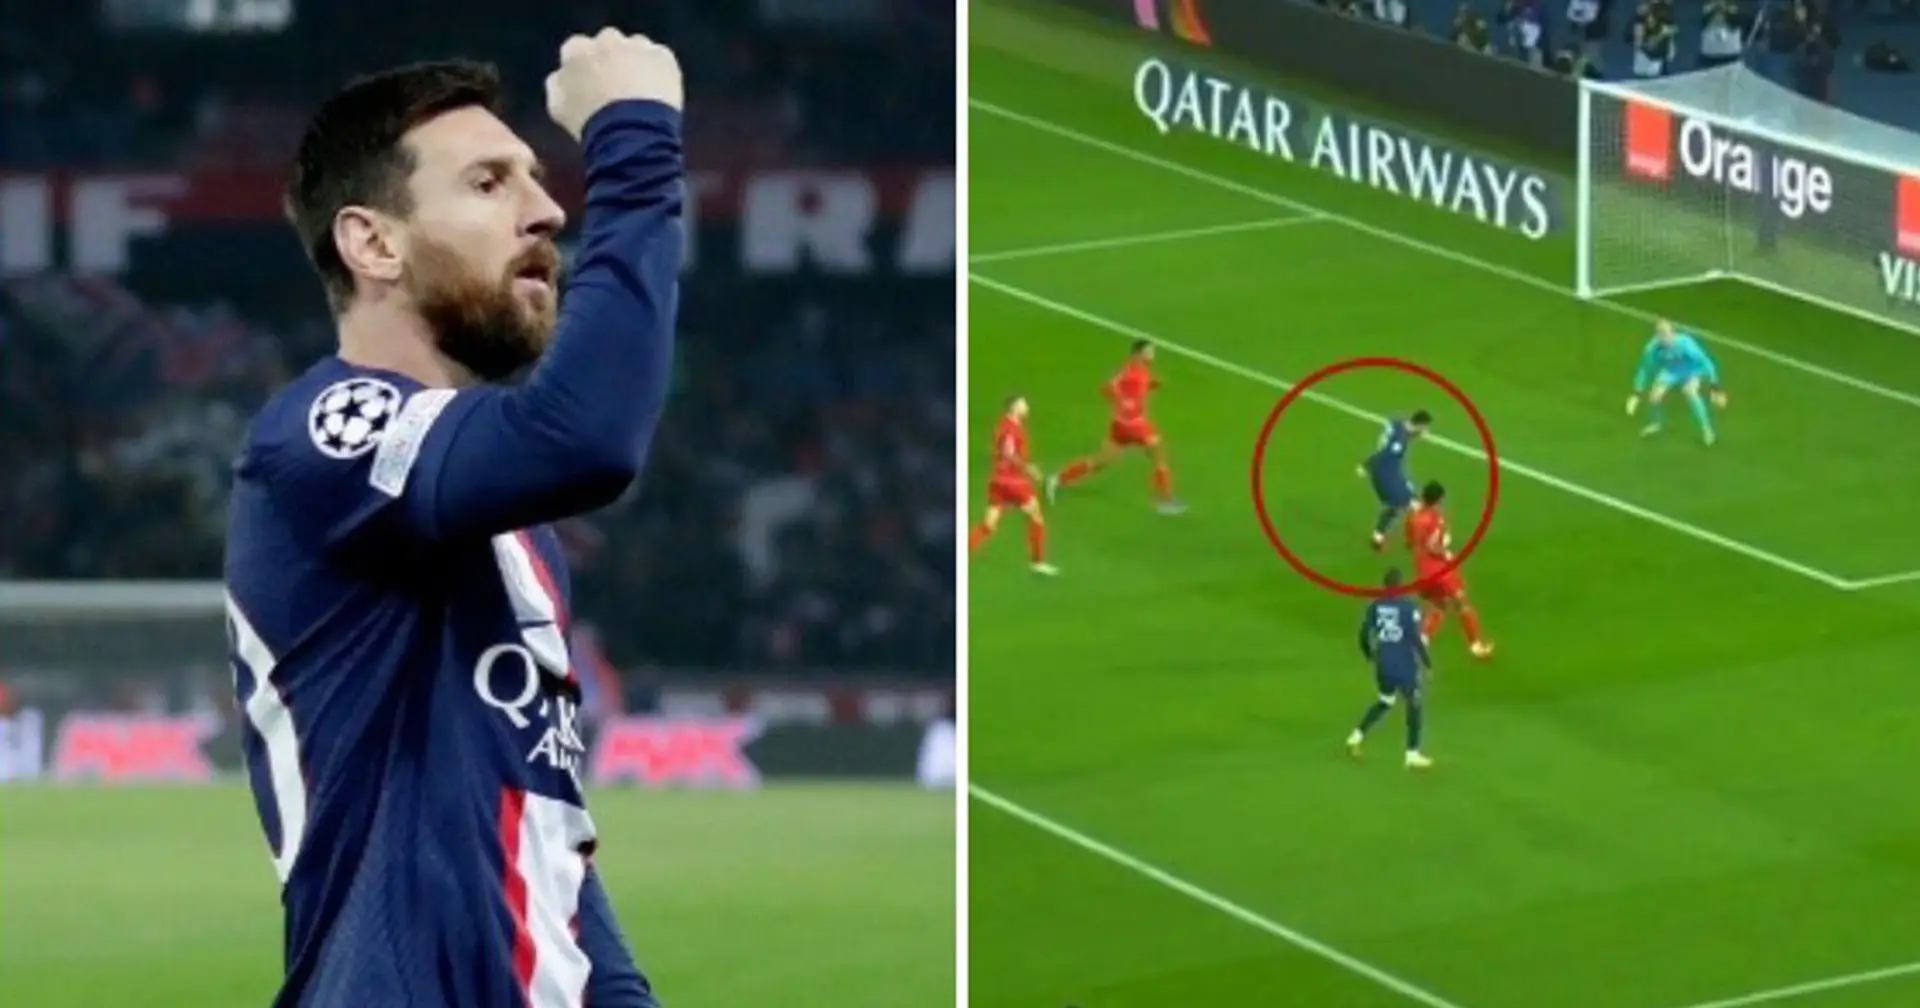 Leo Messi ist gerade erst zurückgekehrt und glänzt bereits für PSG - diesmal erzielte er ein magisches Tor gegen Angers ✨